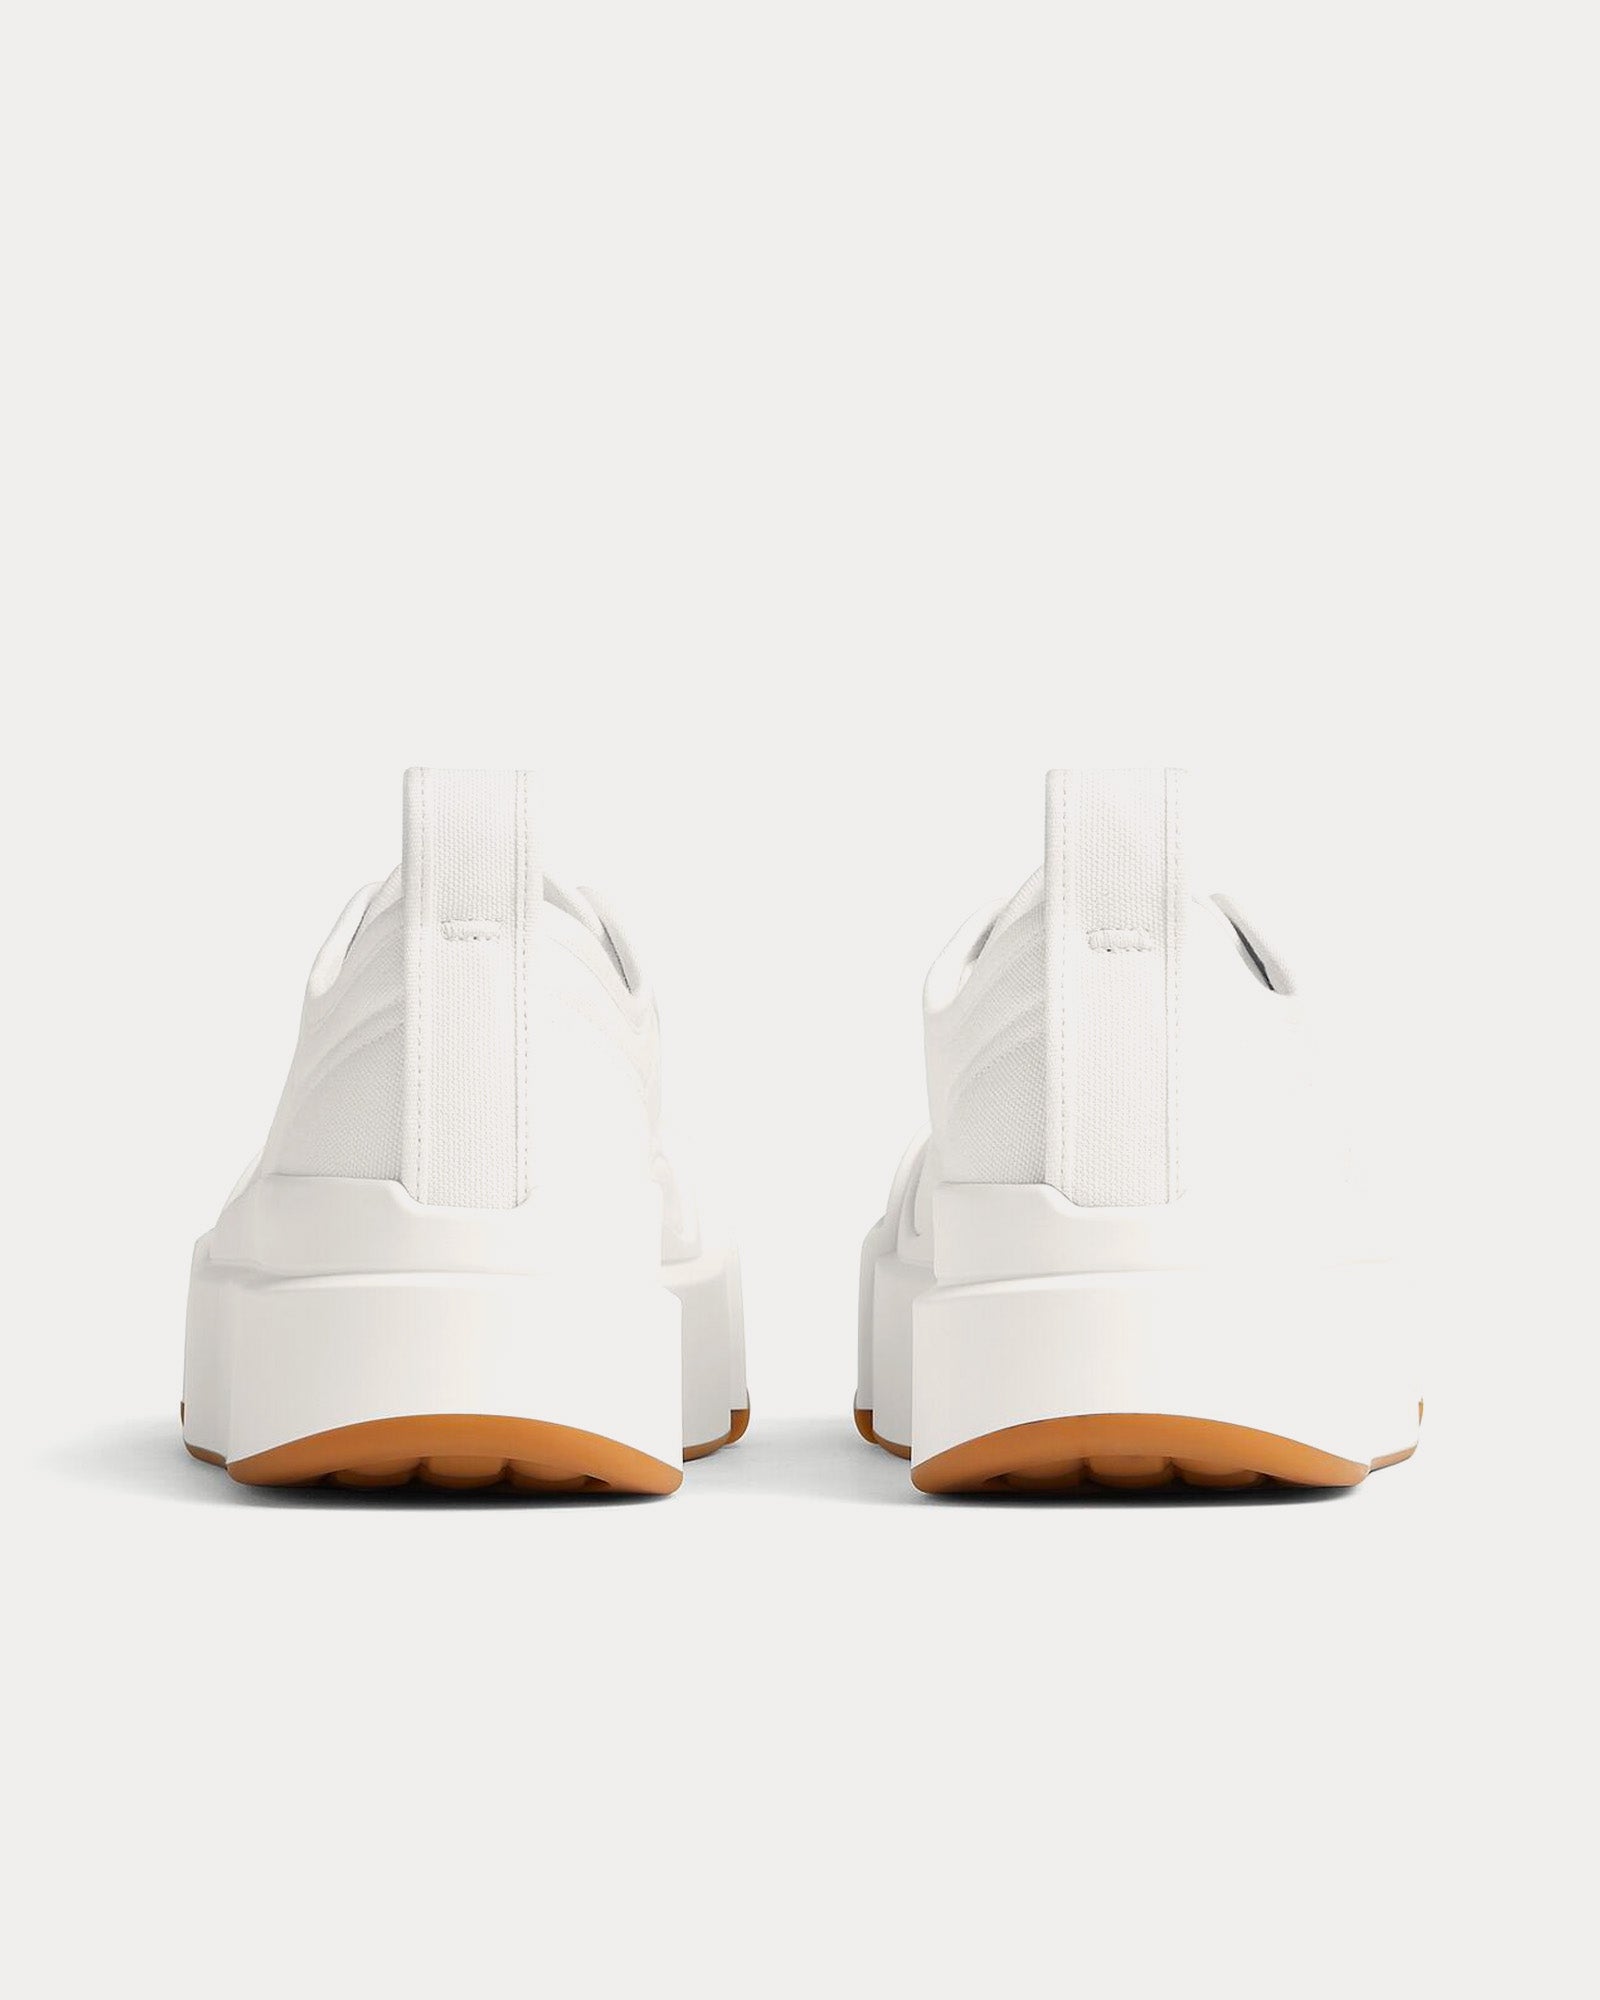 Bottega Veneta - Vulcan Platform Canvas Optic White Low Top Sneakers